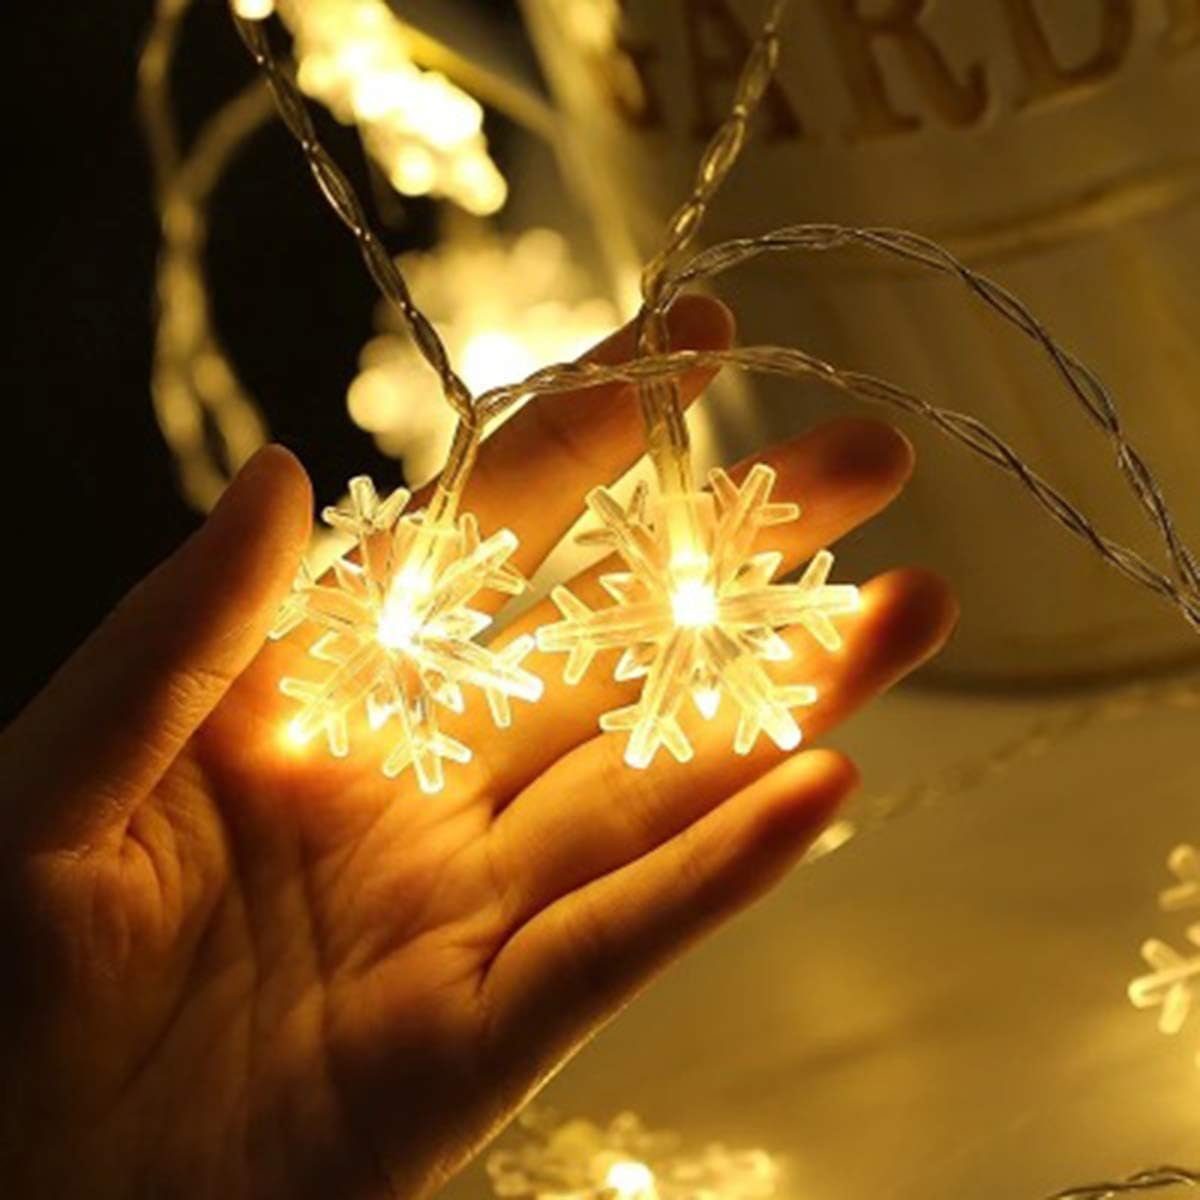 Weihnachts-Lichterkette,12m,LED-Lichterkette,für Jormftte LED-Lichterkette Weihnachten,Party